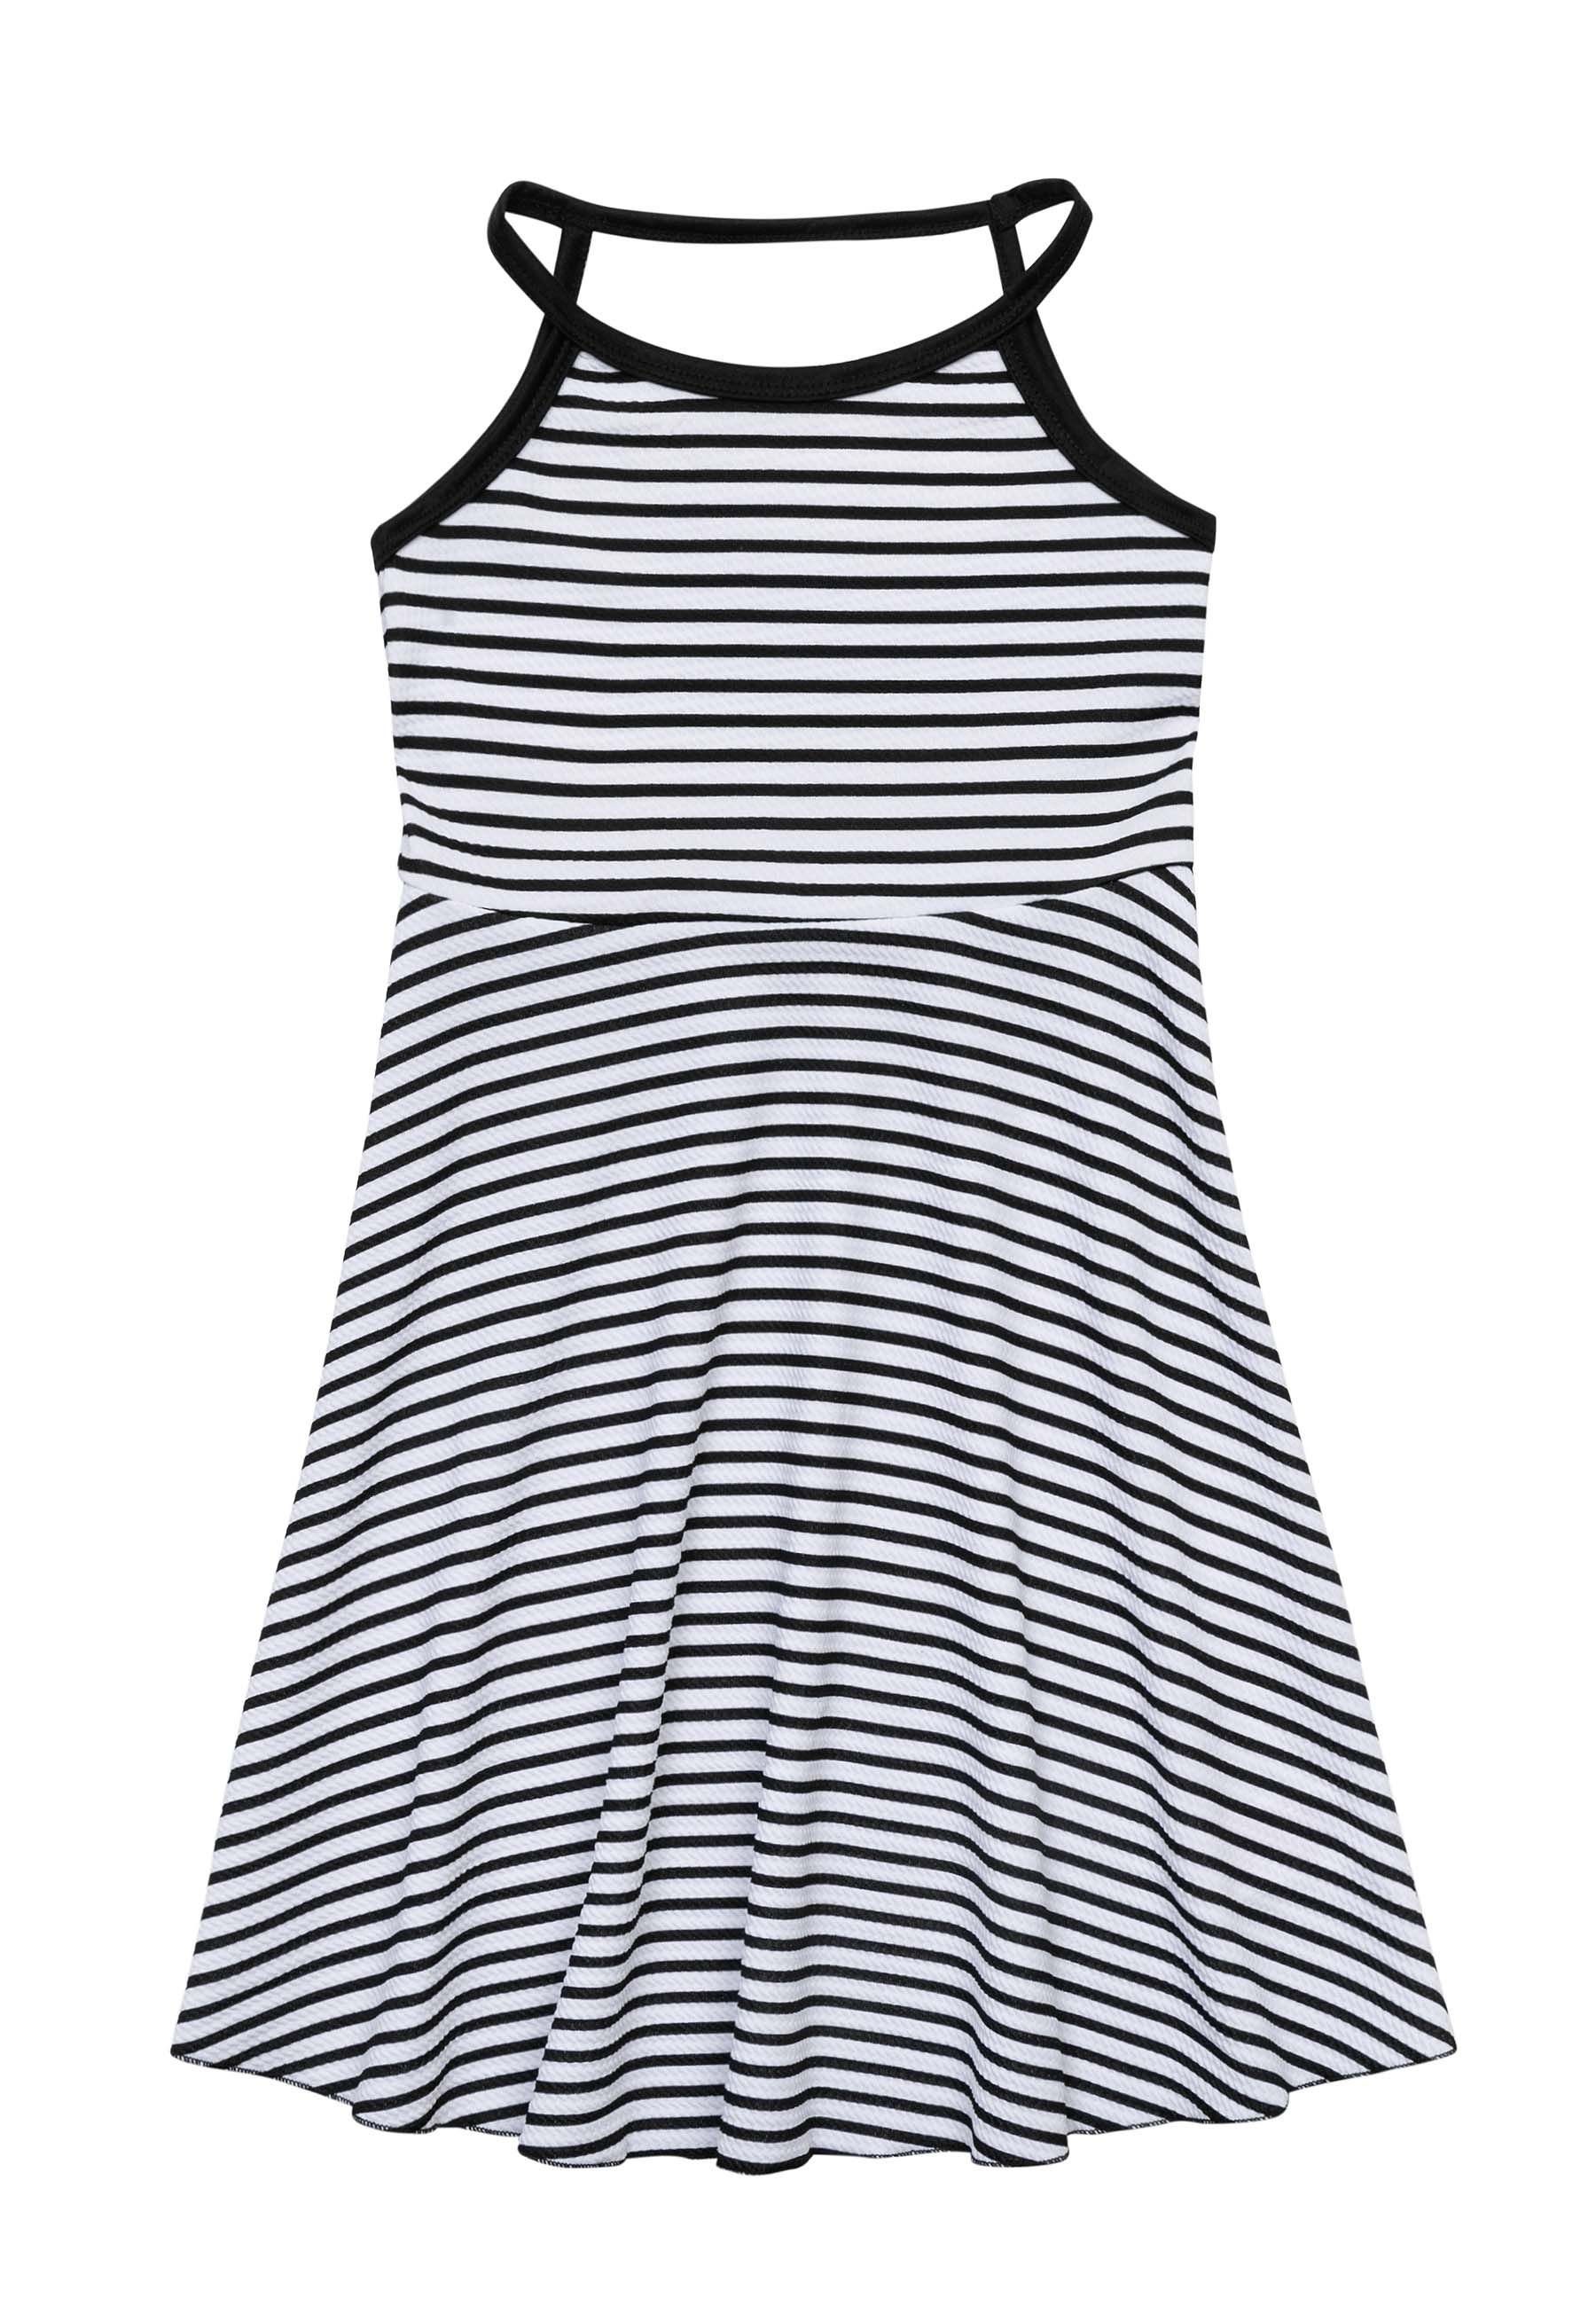 MINOTI Sommerkleid Sommer Kleid mit Trägern (3y-14y) | Sommerkleider